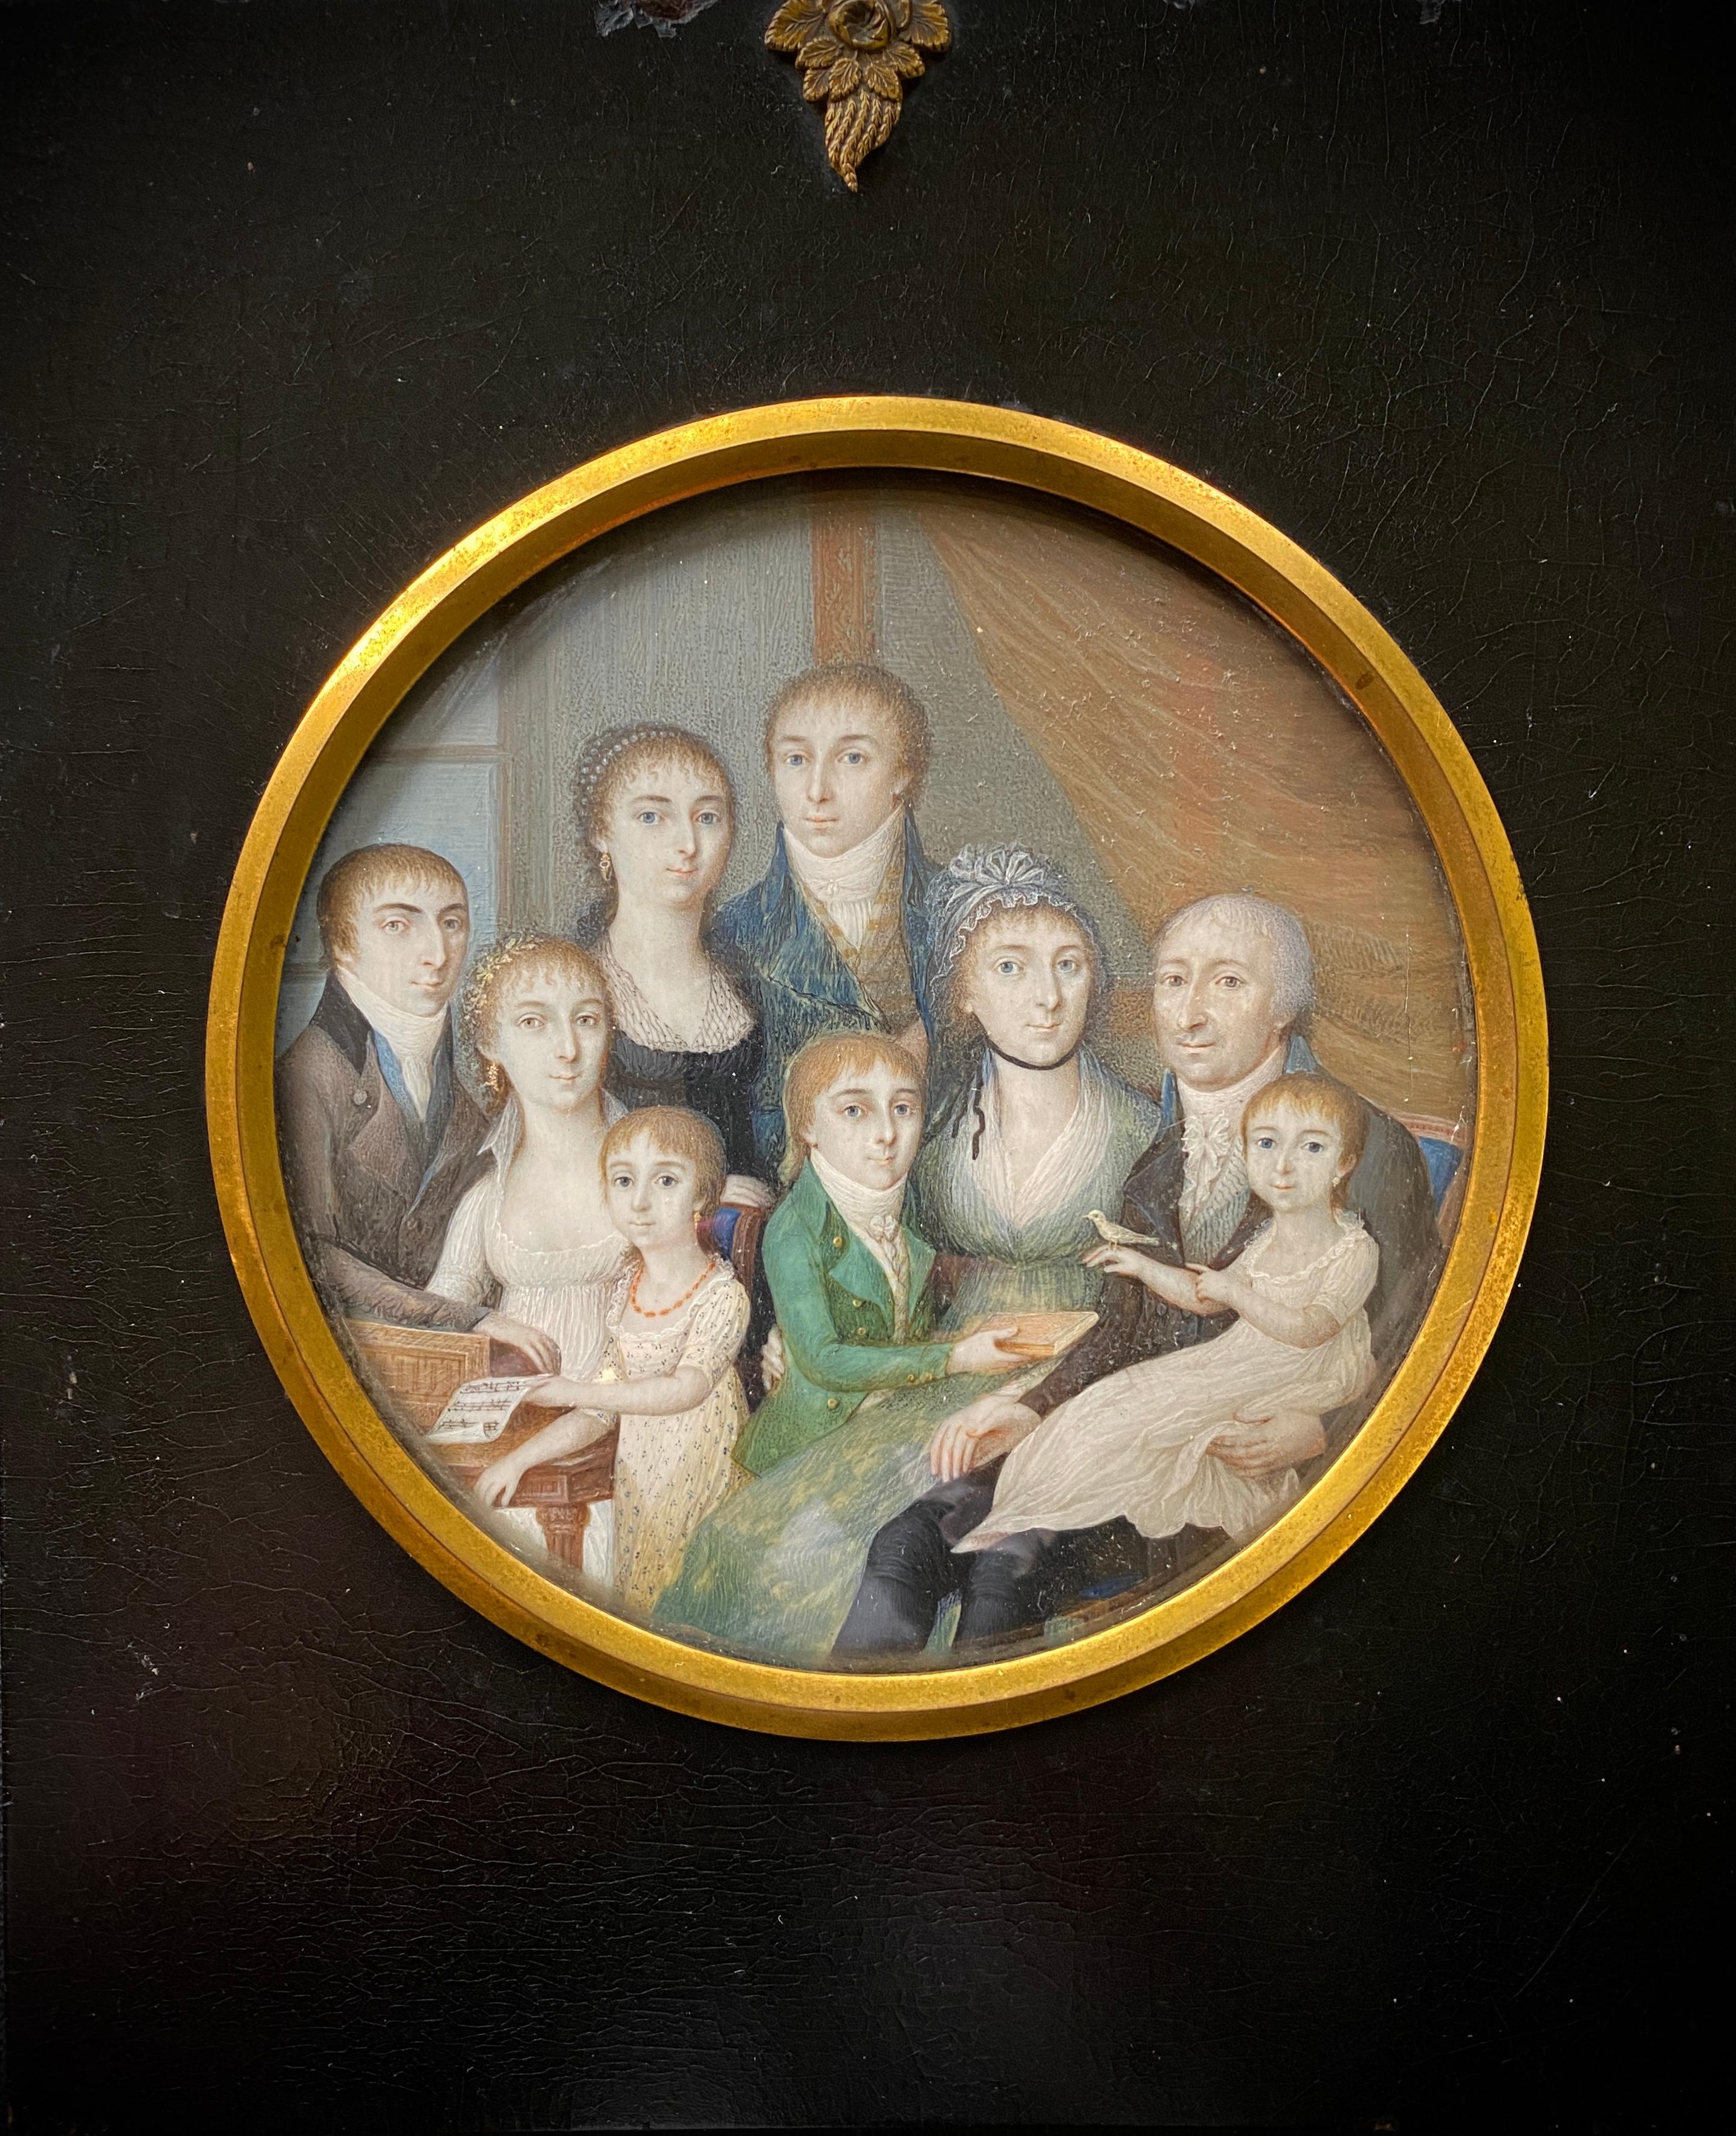 Portrait de famille scandinave, artiste, 18ème siècle, école scandinave - Painting de Unknown